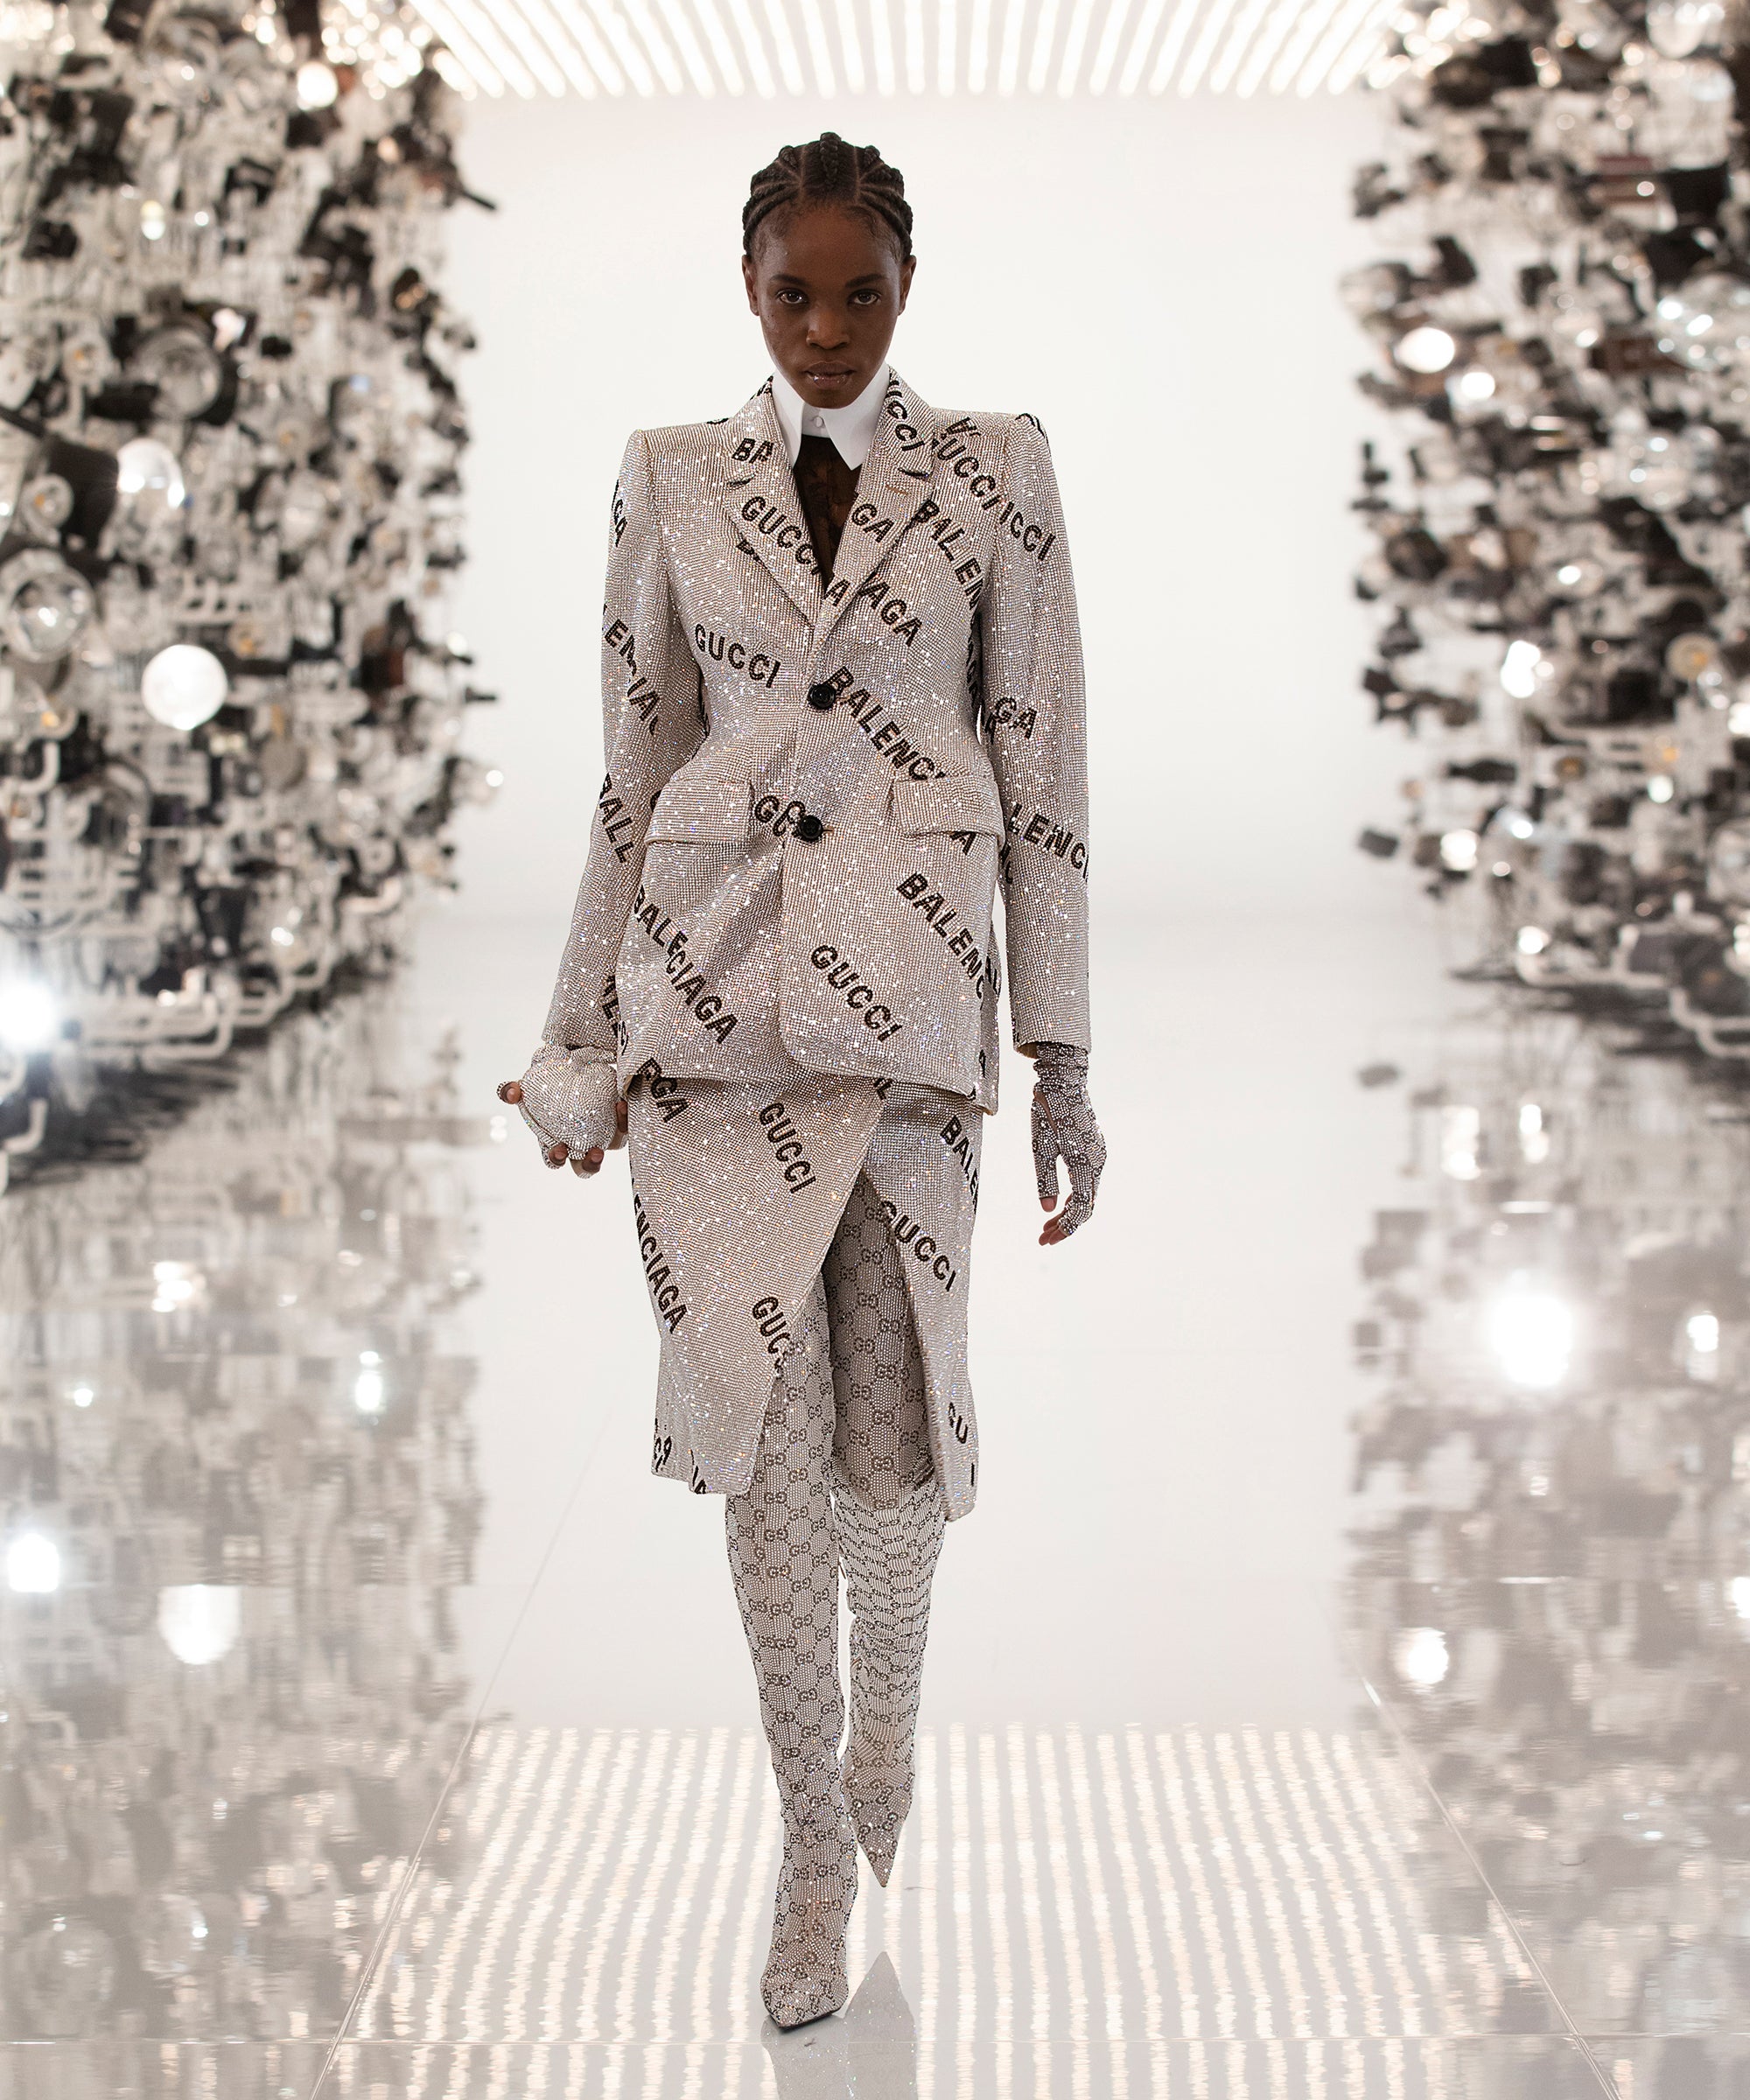 Gucci's Fall 2021 Aria Collection Includes A Gucci x Balenciaga